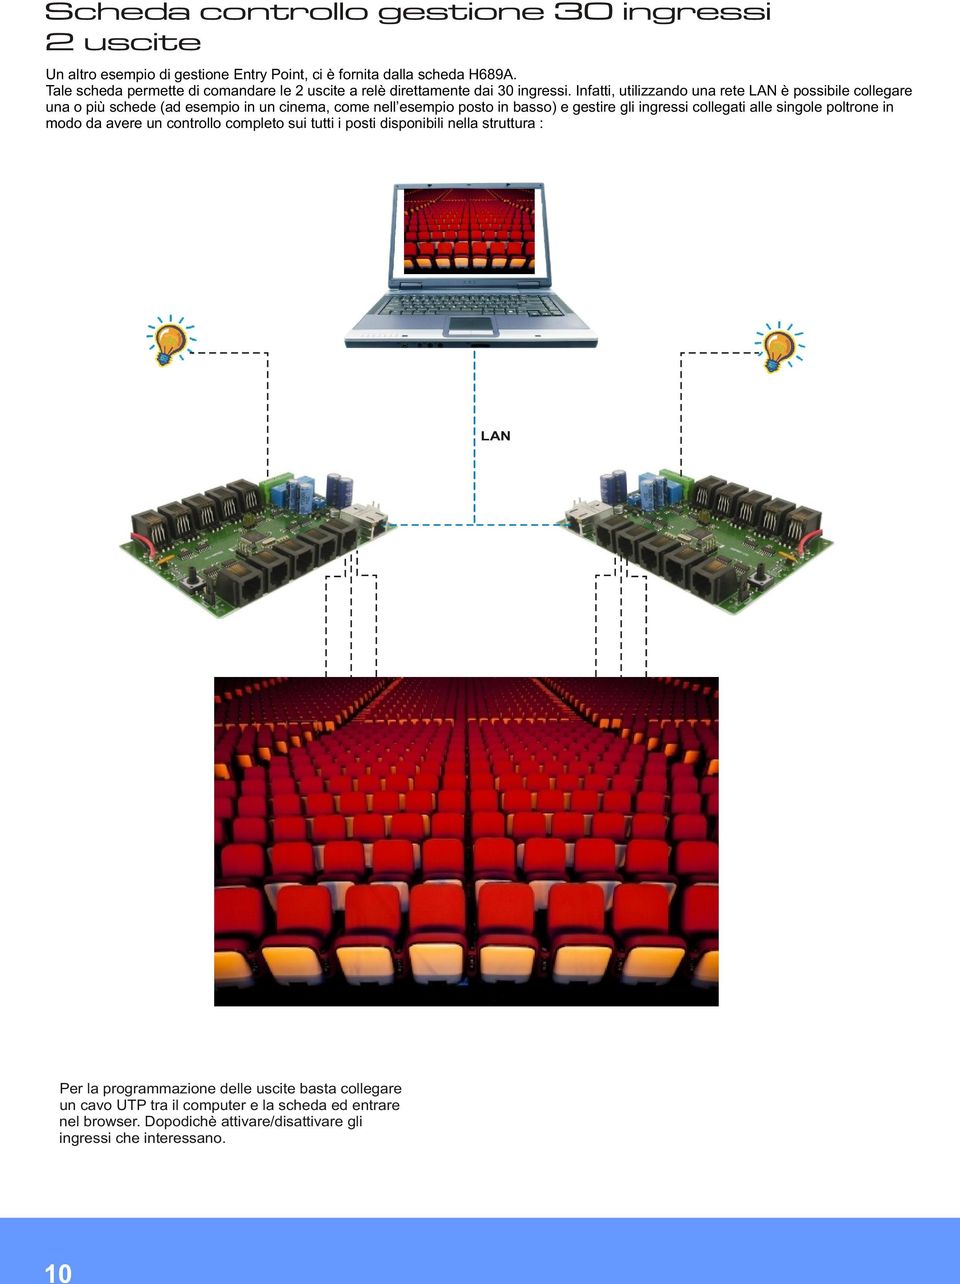 Infatti, utilizzando una rete LAN è possibile collegare una o più schede (ad esempio in un cinema, come nell esempio posto in basso) e gestire gli ingressi collegati